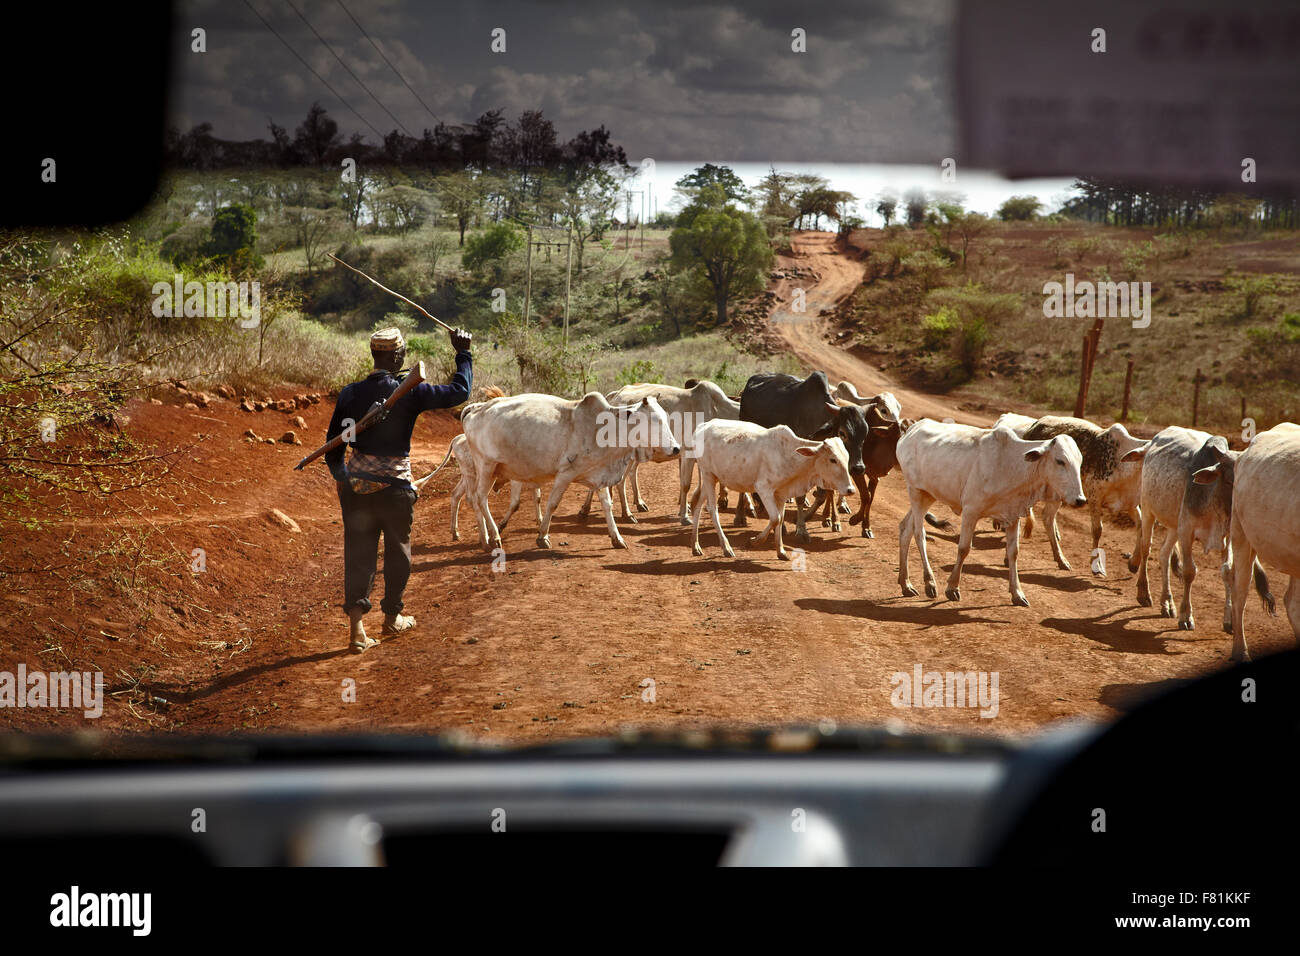 Armati di guardia drovers il trogolo di bestiame su strada nei pressi di Marsabit nel nord del Kenya. Foto Stock